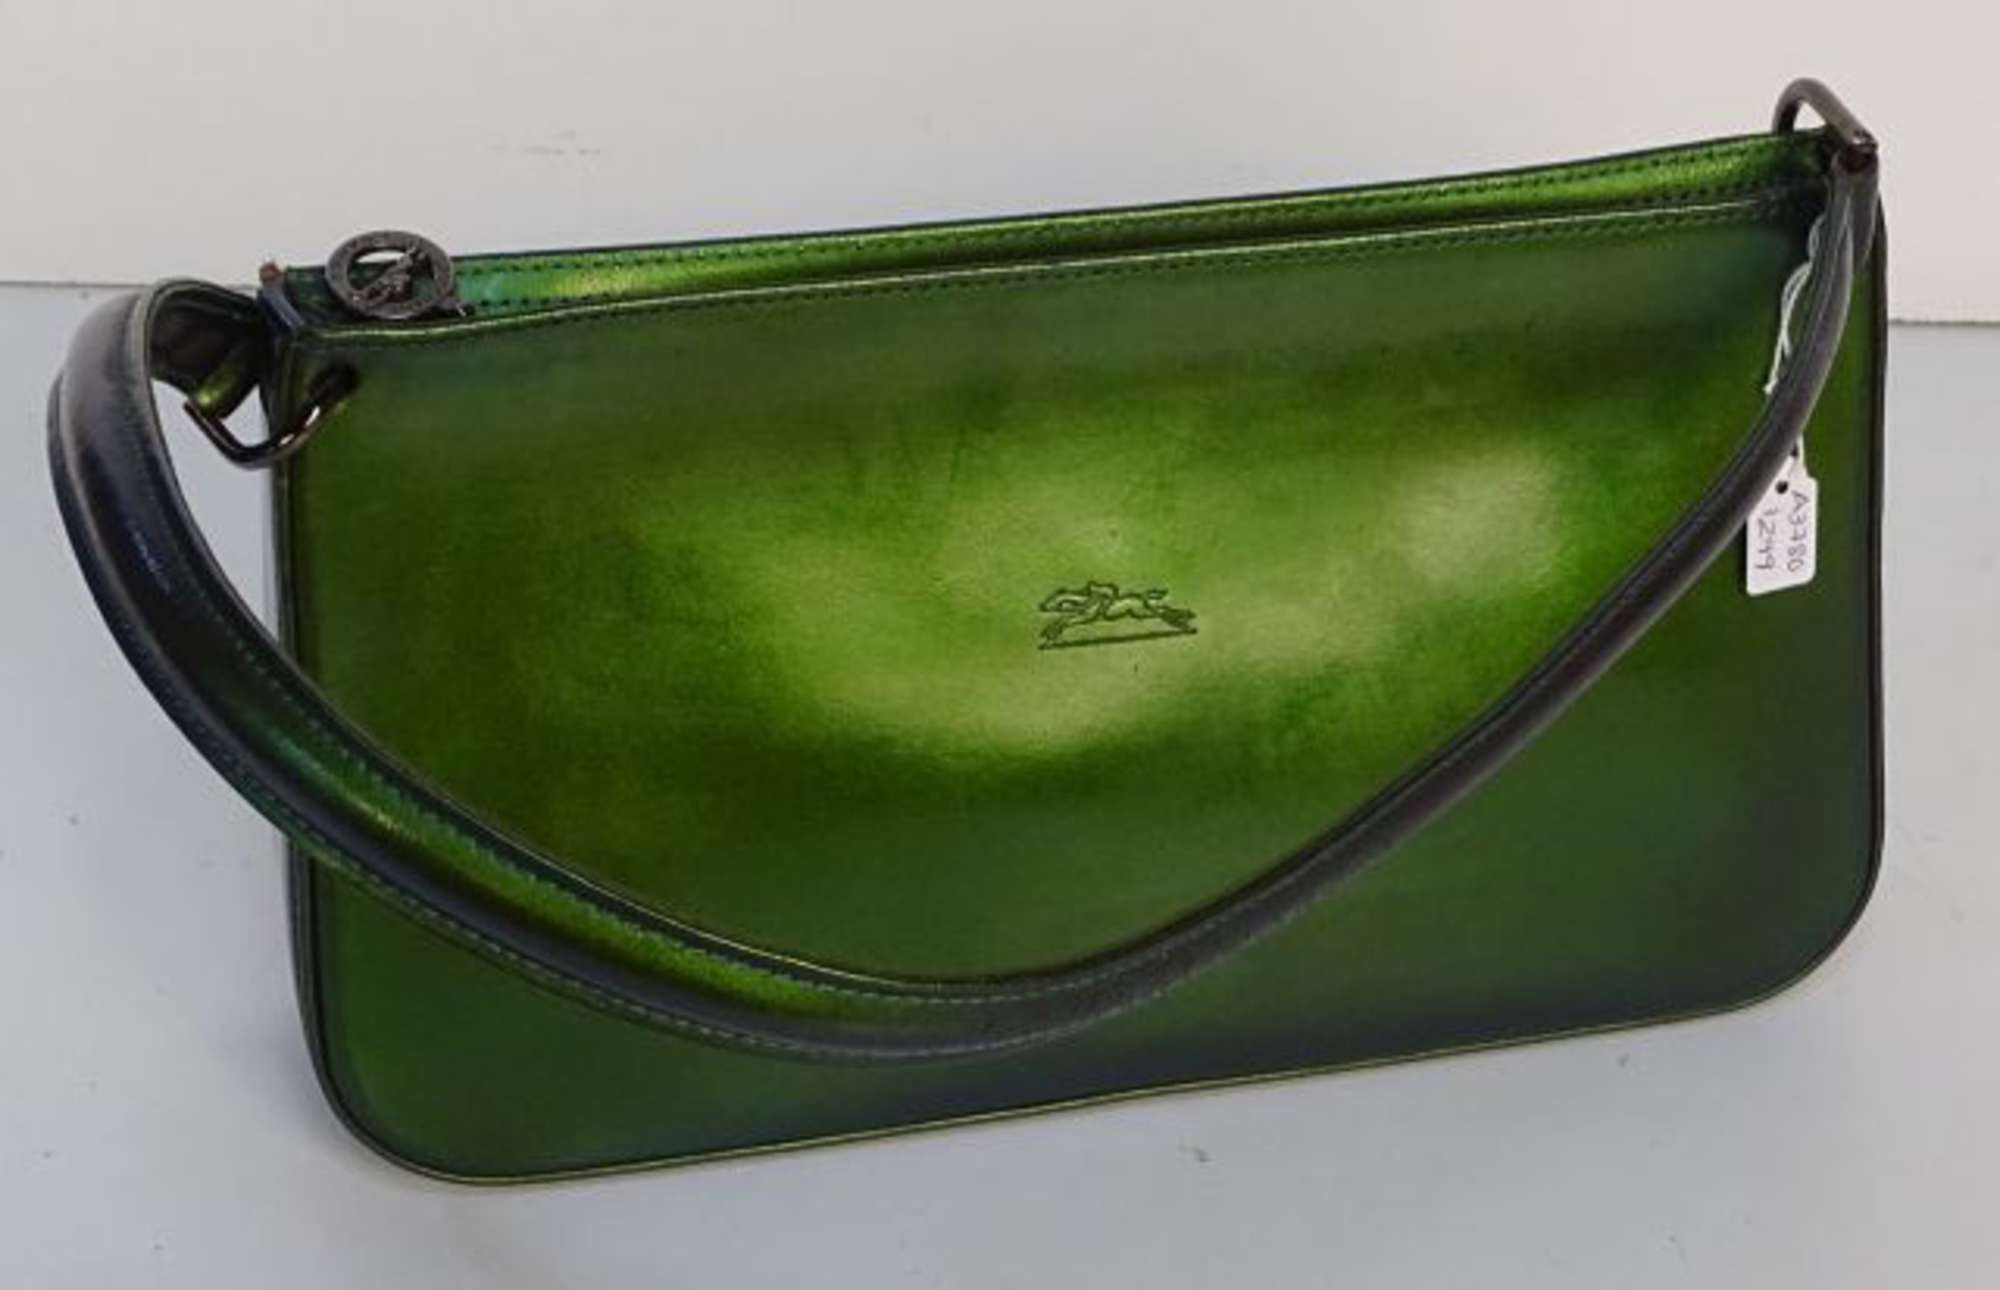 LONGCHAMP - Sac baguette porté épaule en cuir vernis vert effet ...